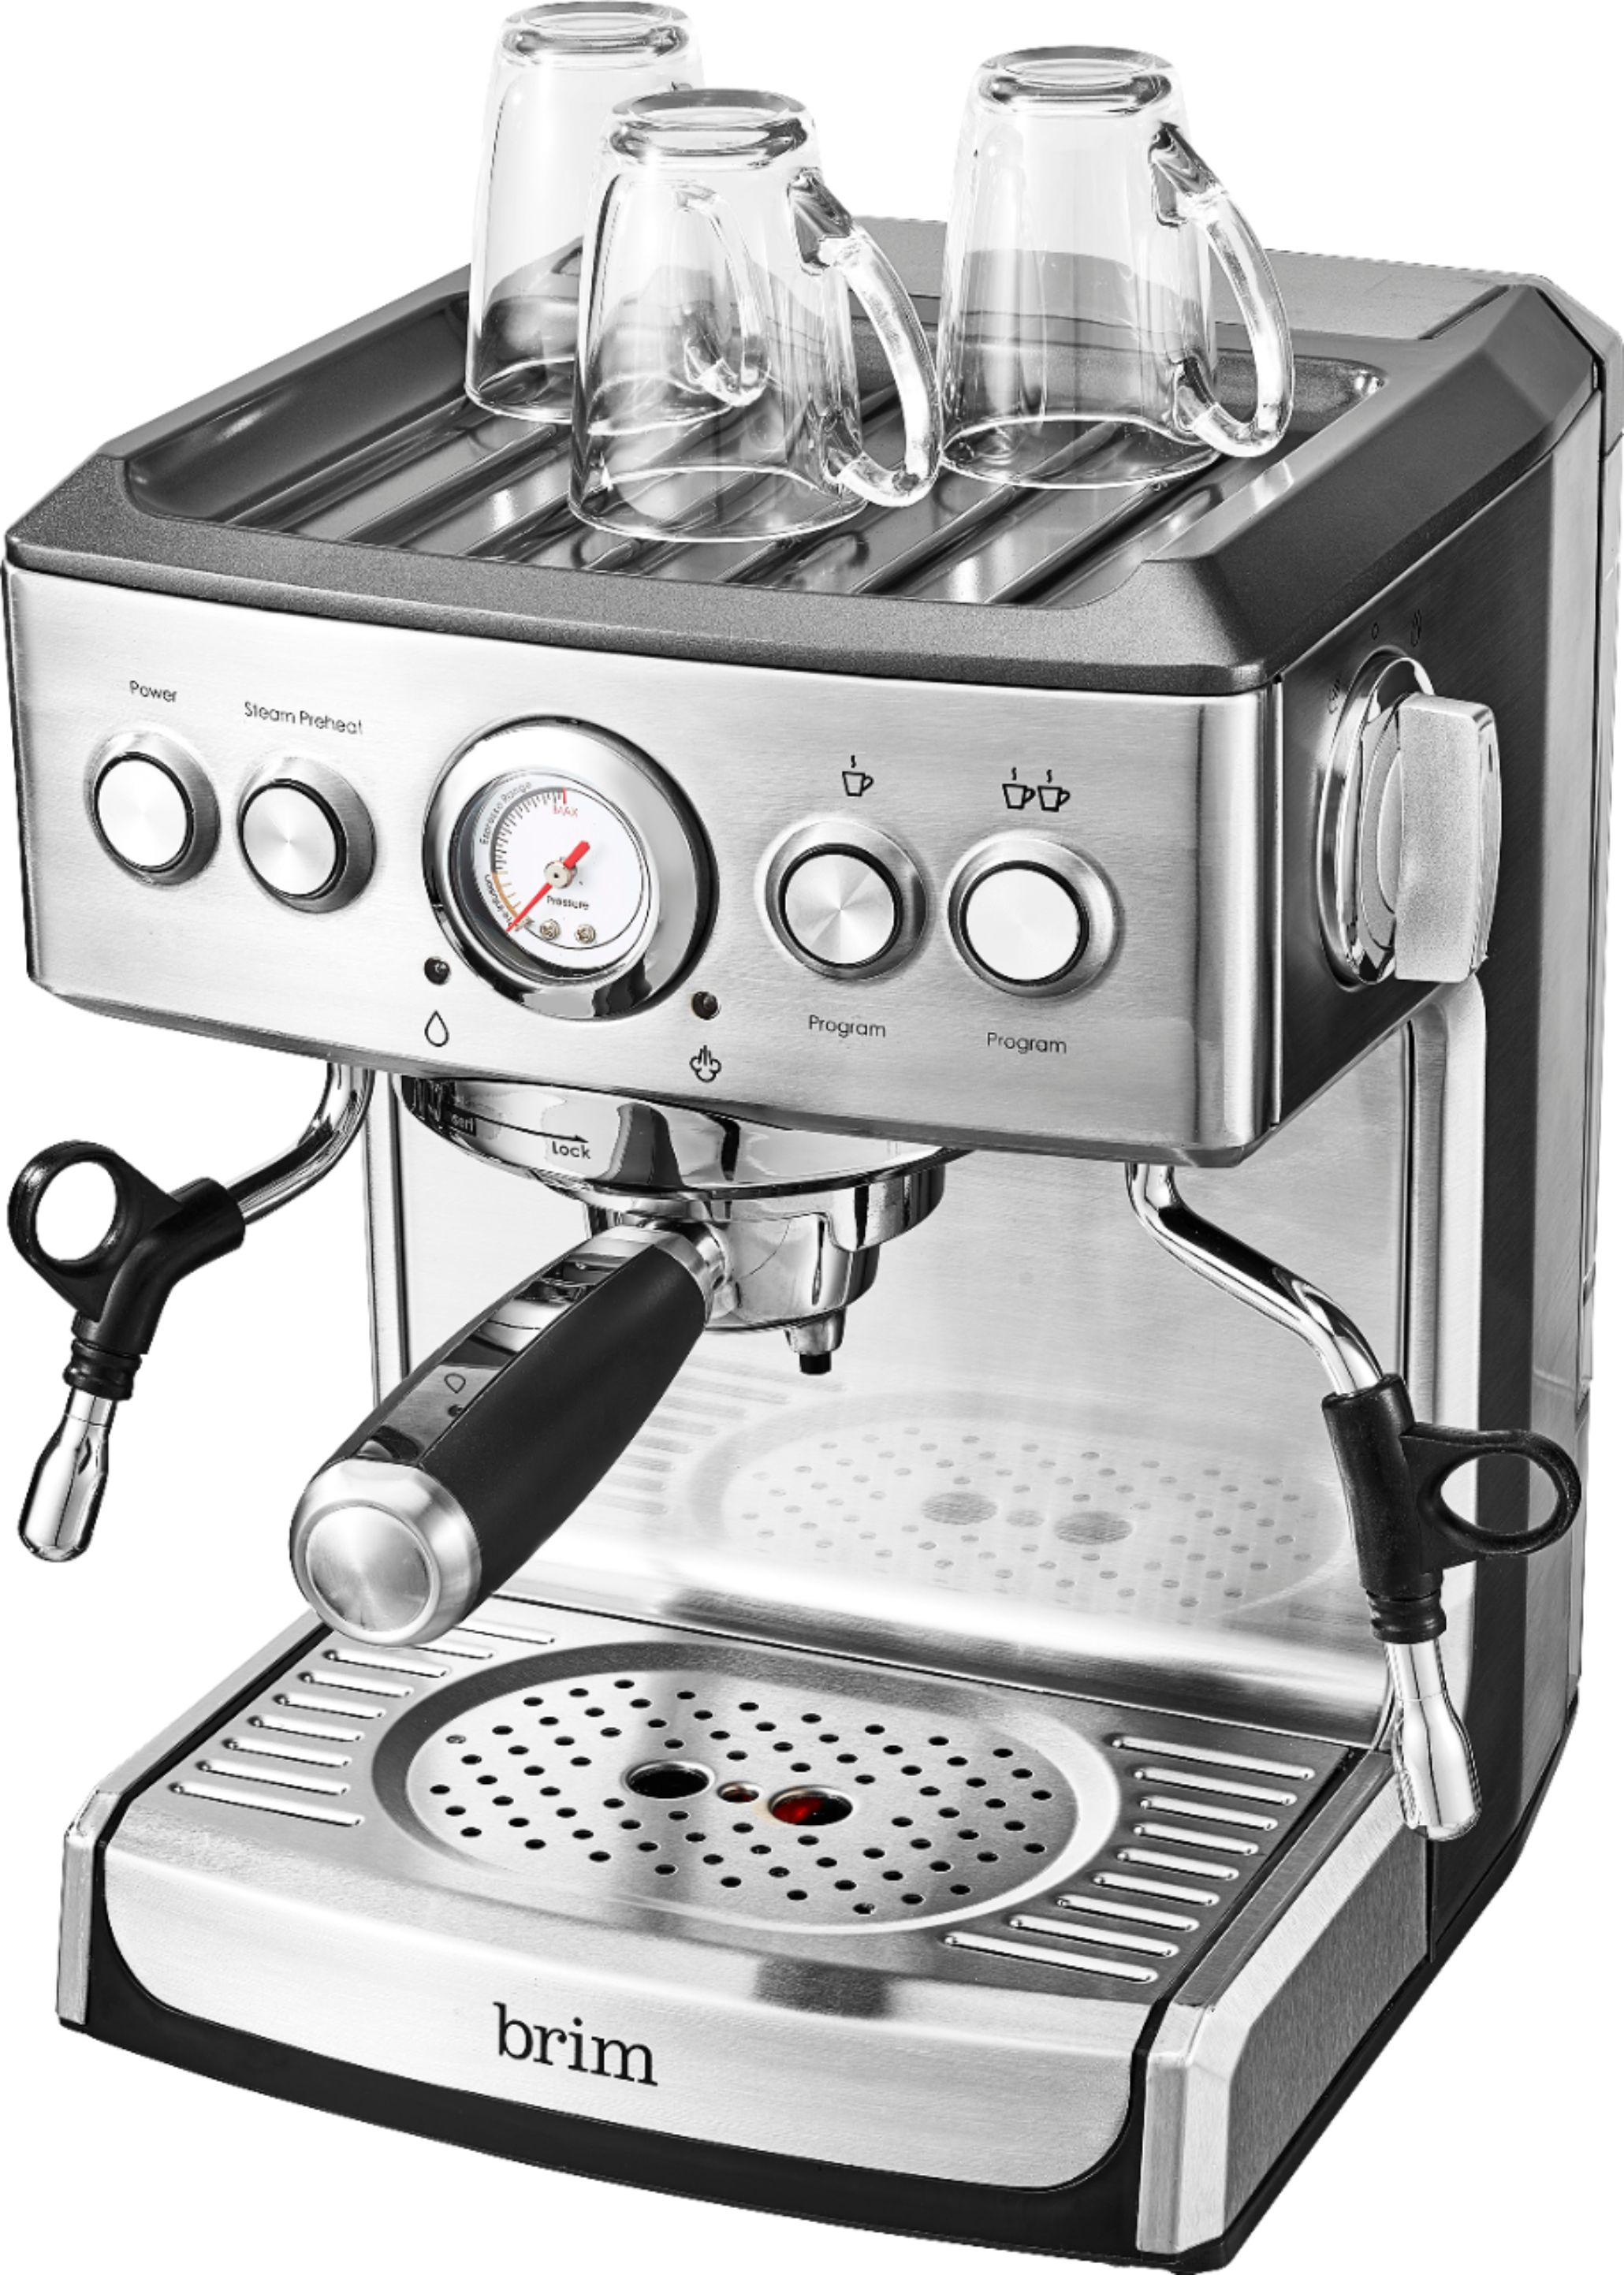 brim espresso machine